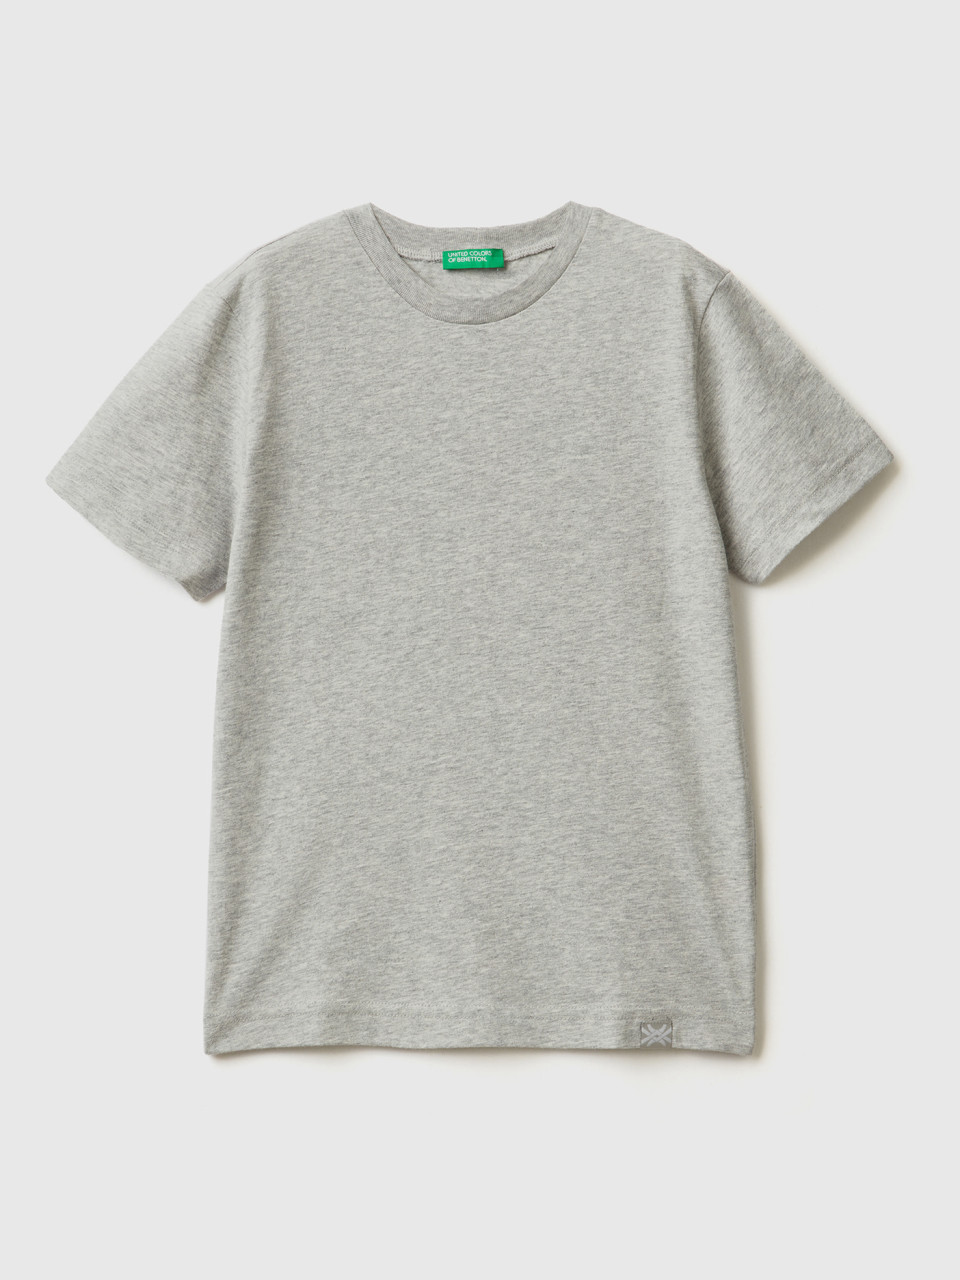 Benetton, Organic Cotton T-shirt, Light Gray, Kids